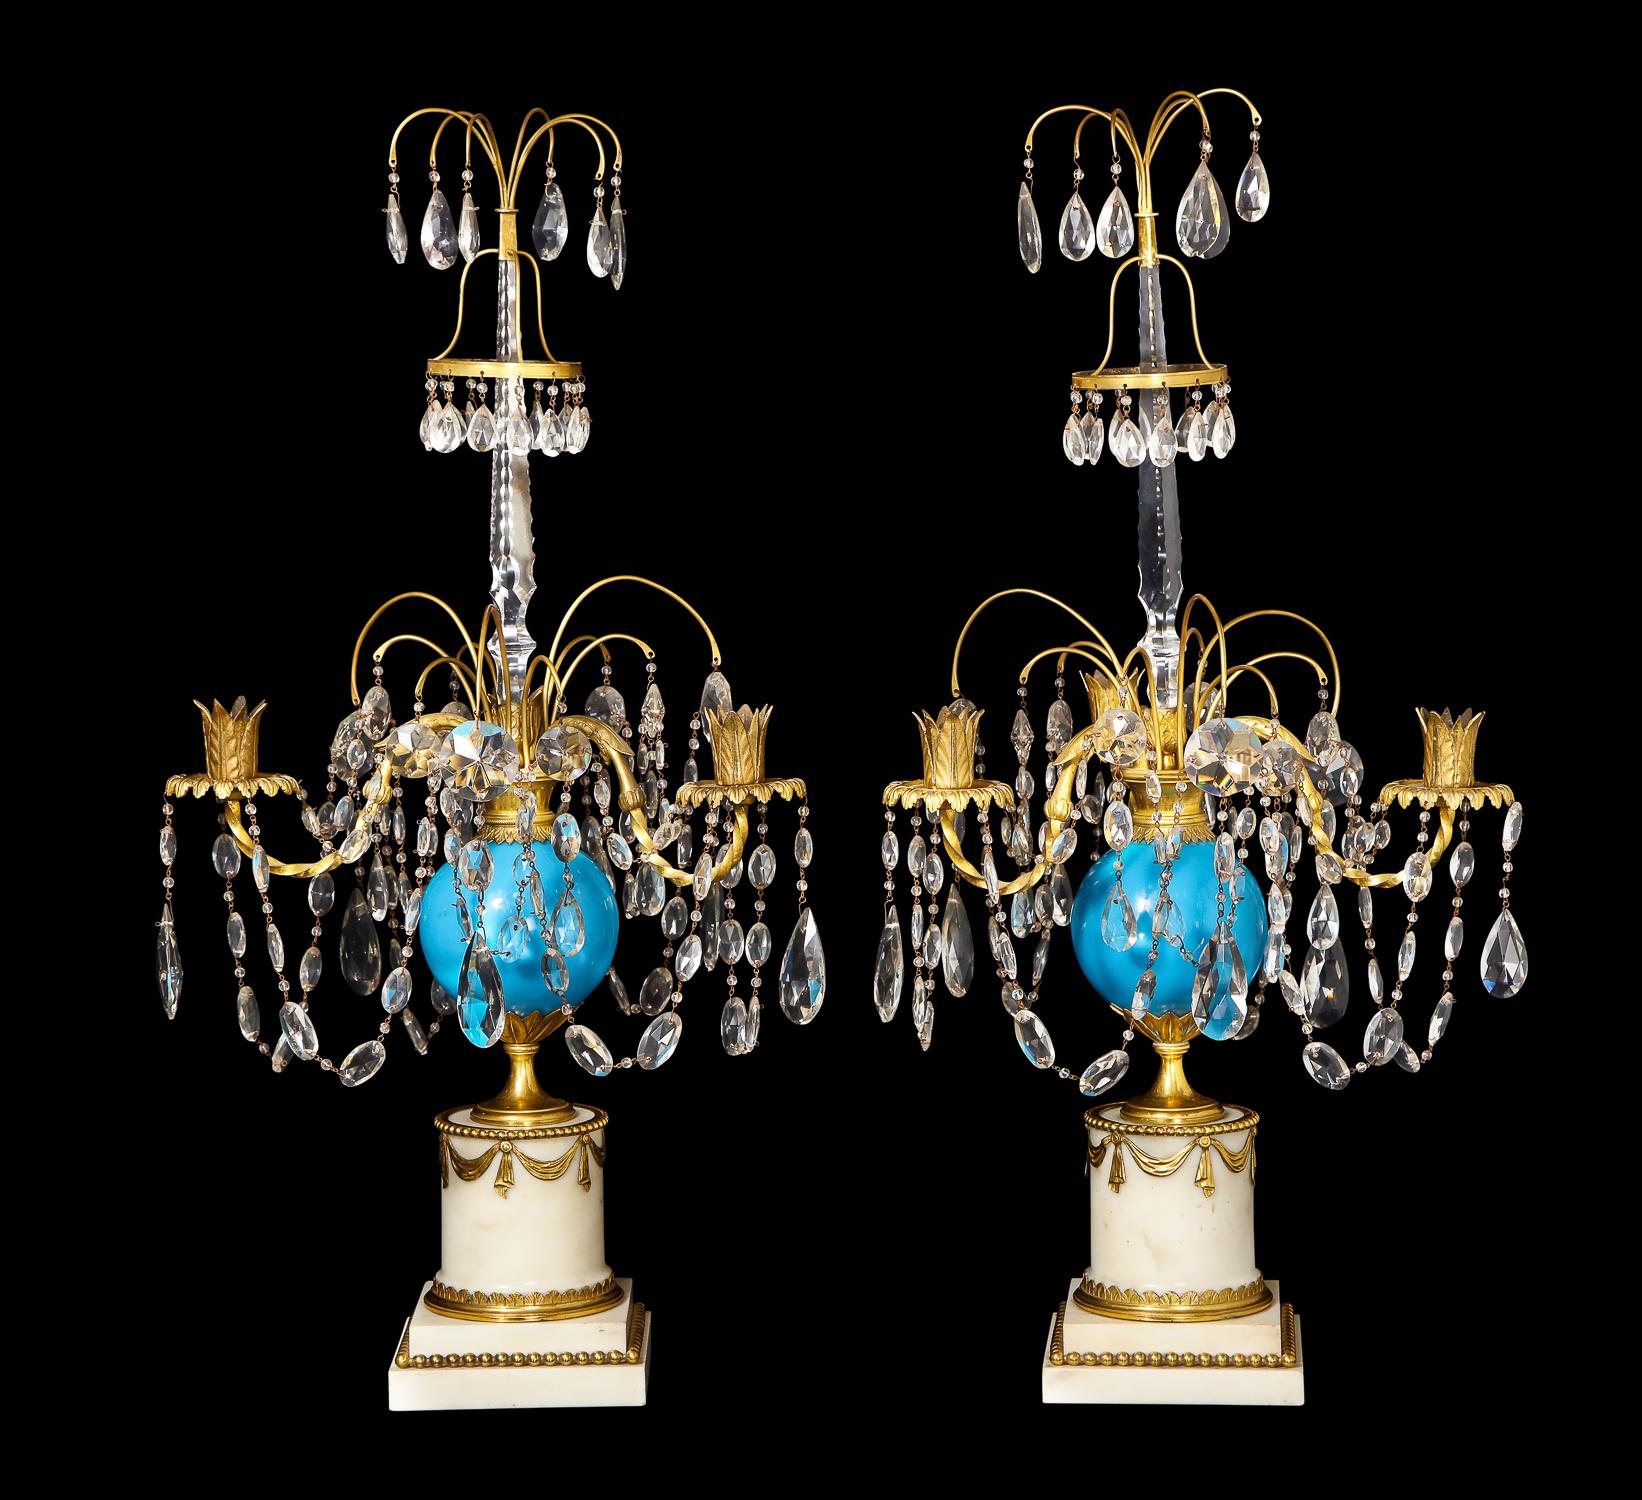 Une paire d'exquis candélabres néoclassiques russes anciens en bronze doré, verre opalin bleu, cristal taillé et marbre blanc, aux détails superbes, agrémentés d'une boule centrale en verre opalin bleu, de chaînes en cristal taillé avec des bras en